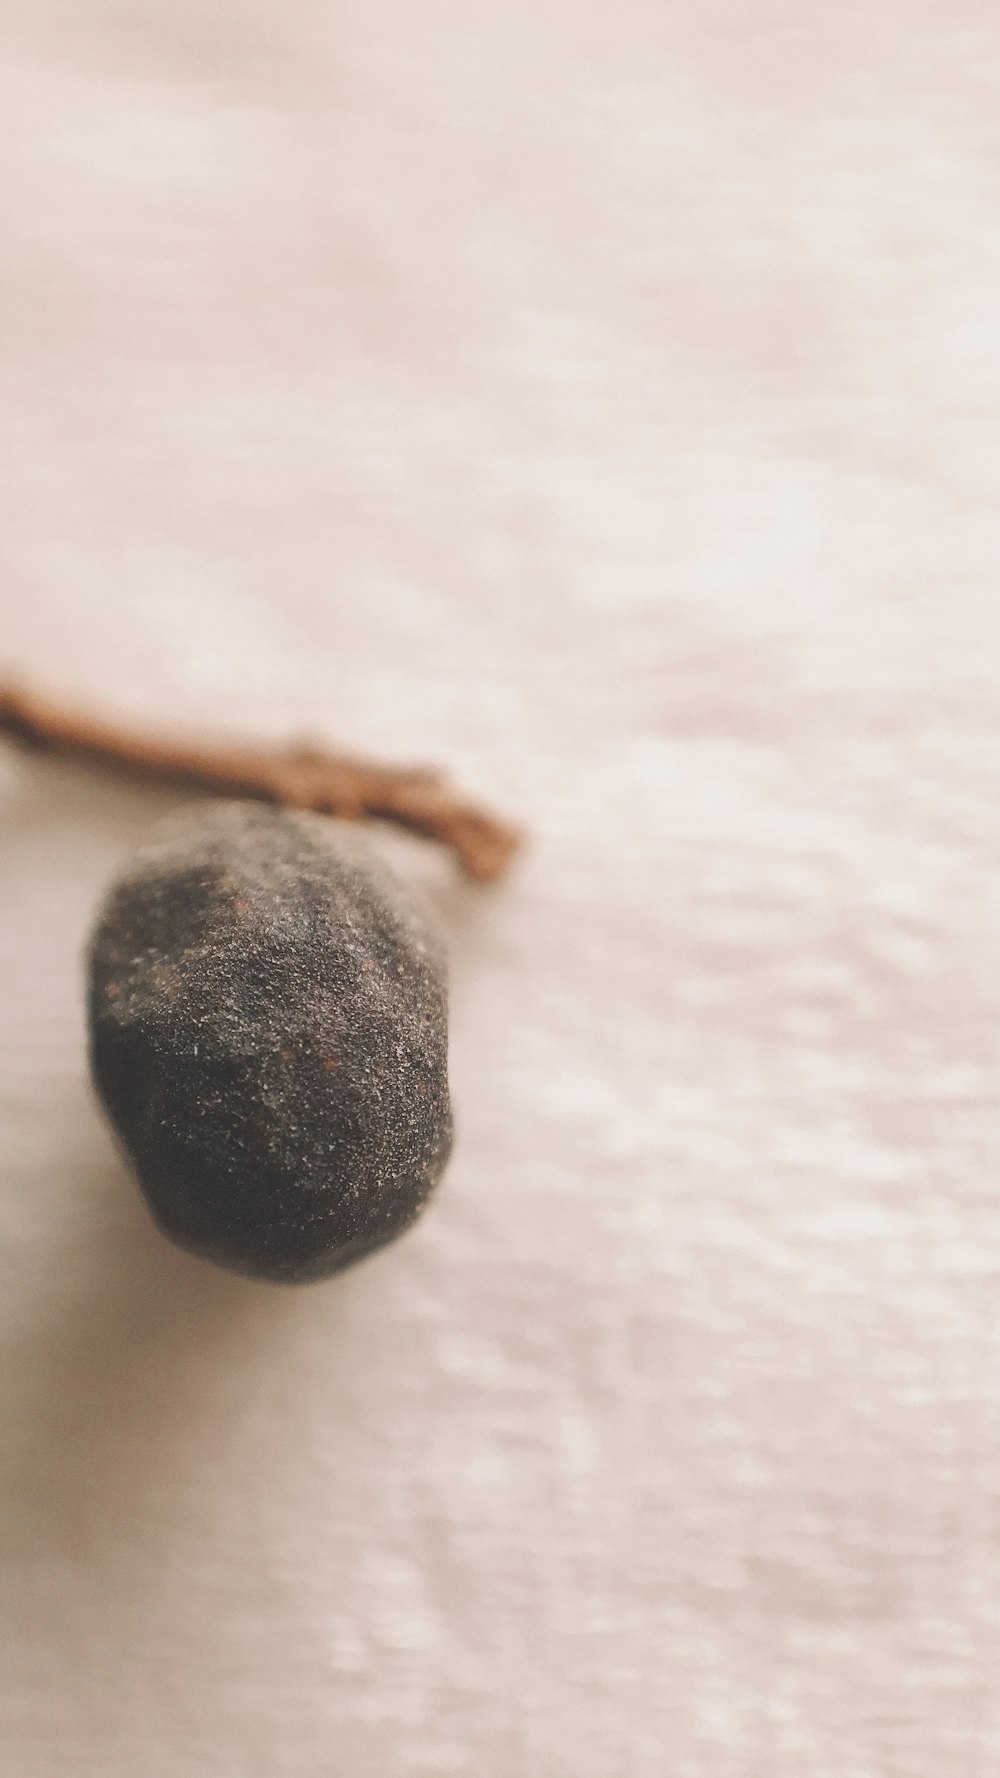 black round fruit on white textile